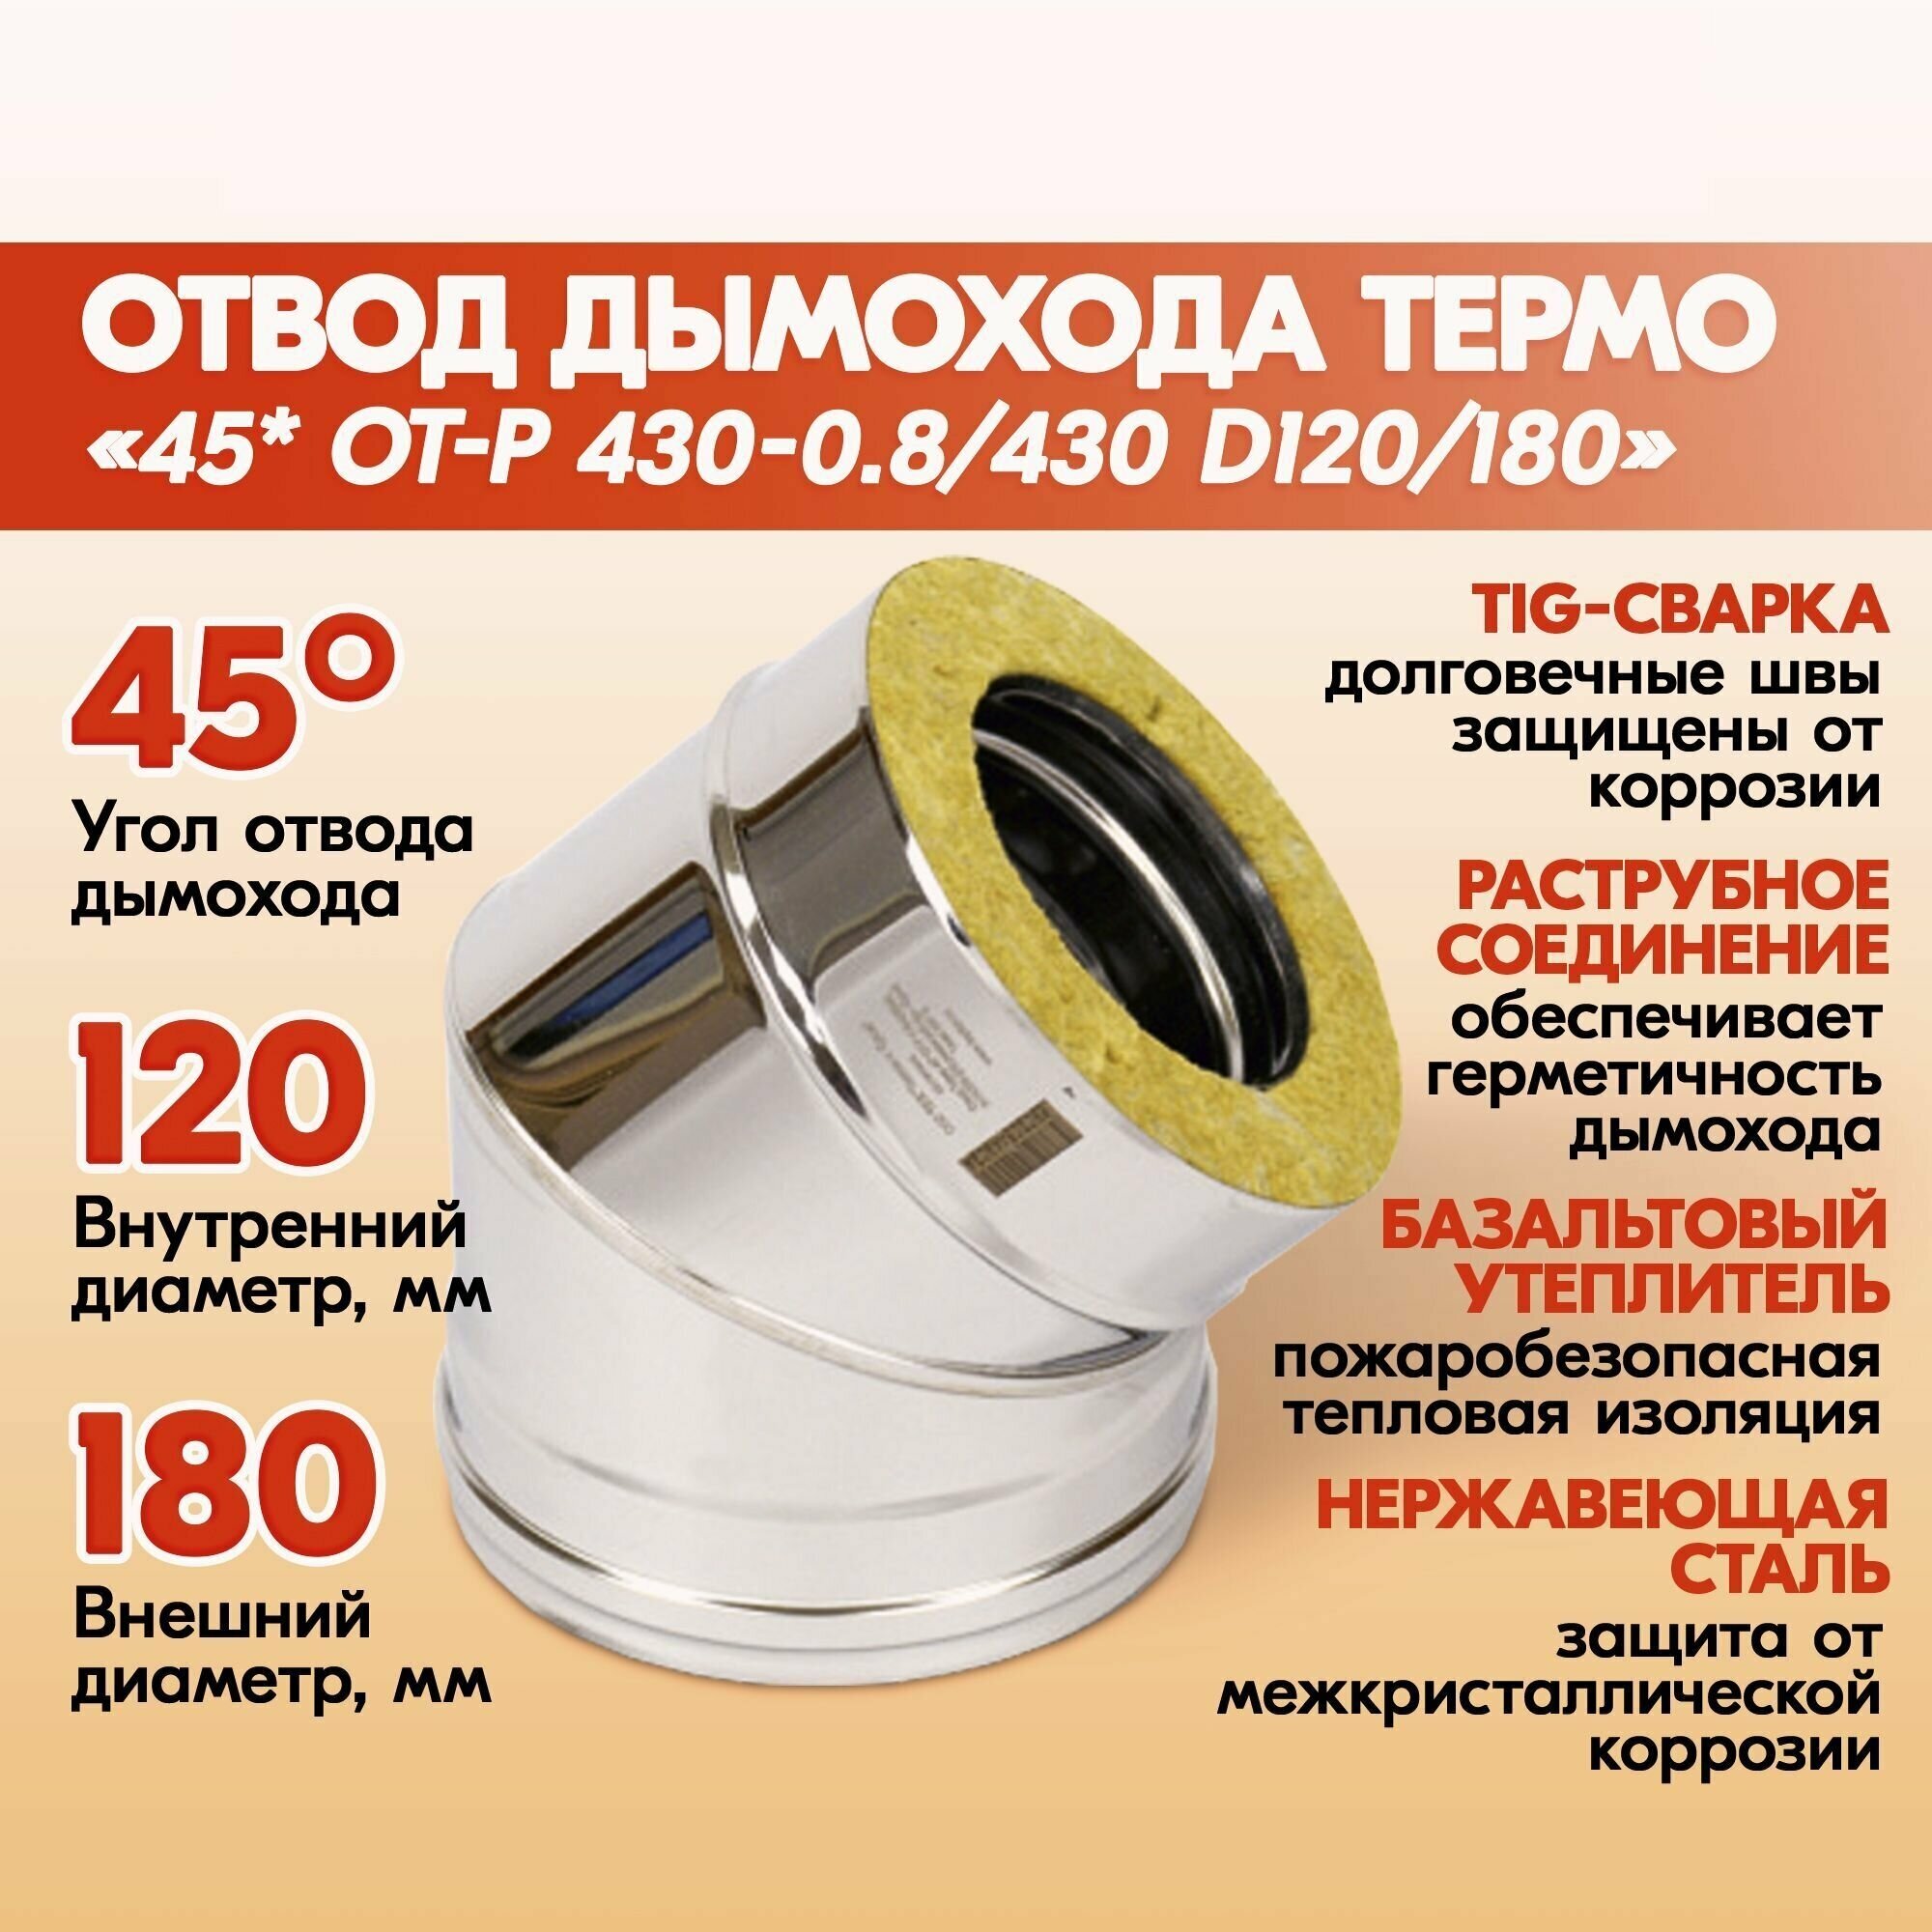 Отвод дымохода Термо 45* ОТ-Р 430-0.8/430 D120/180